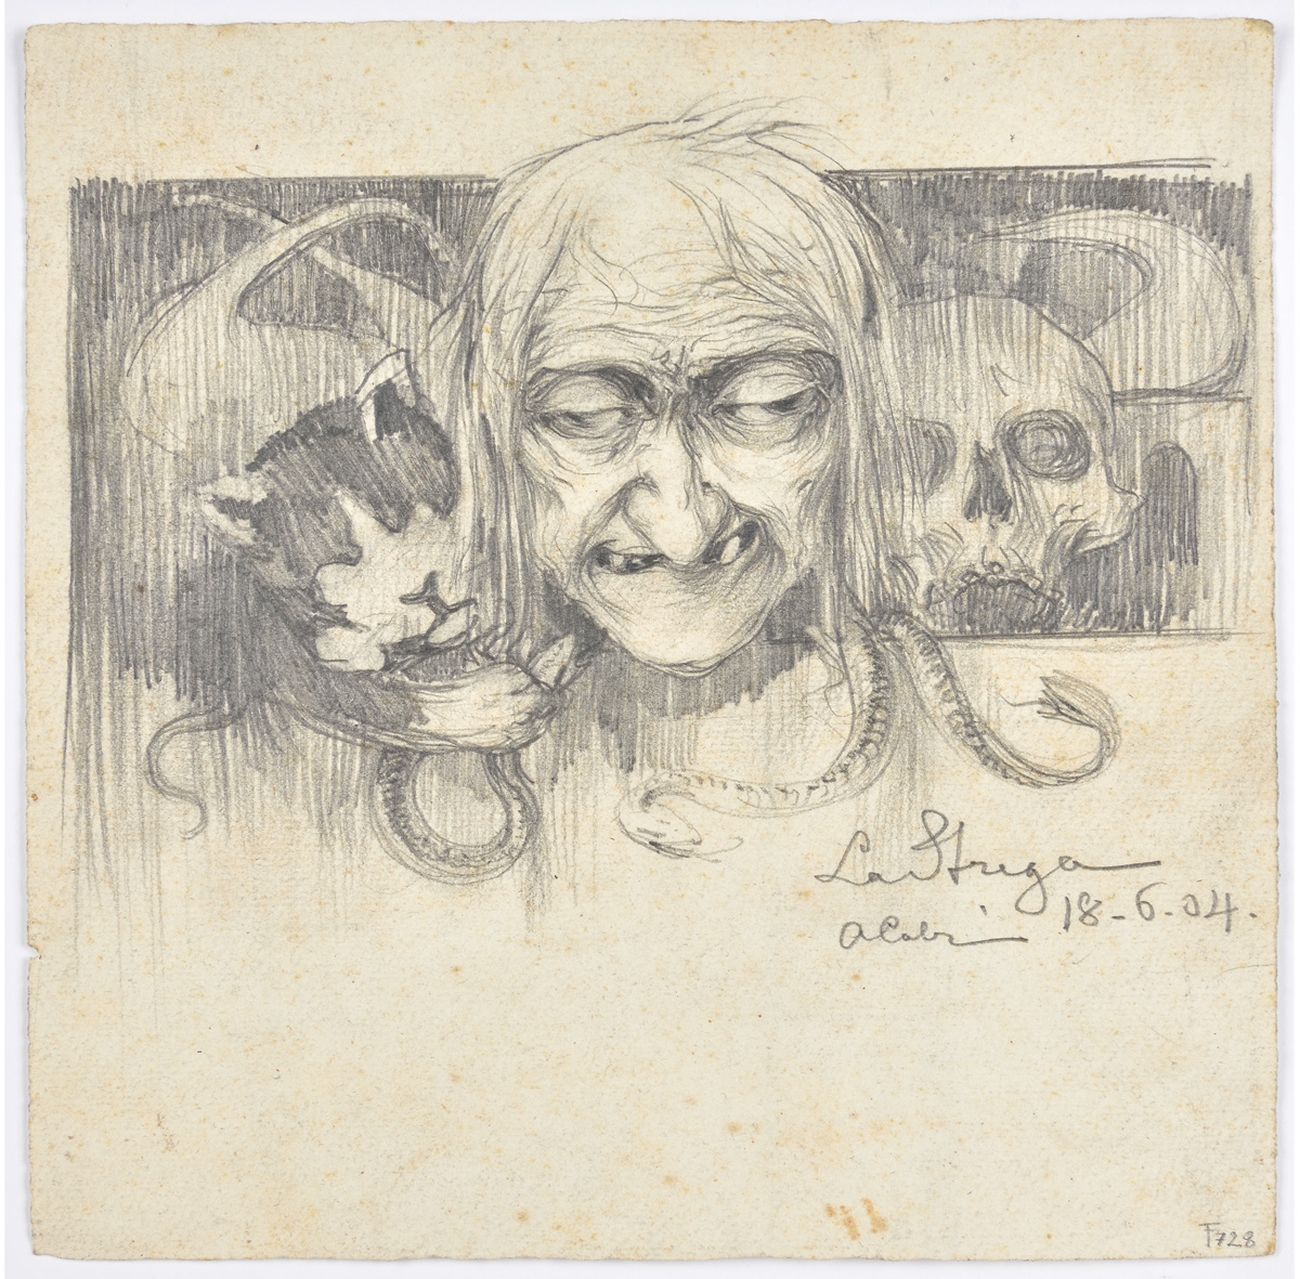 Achille Calzi, La strega, 1904, matita su carta, collezione MIC Faenza